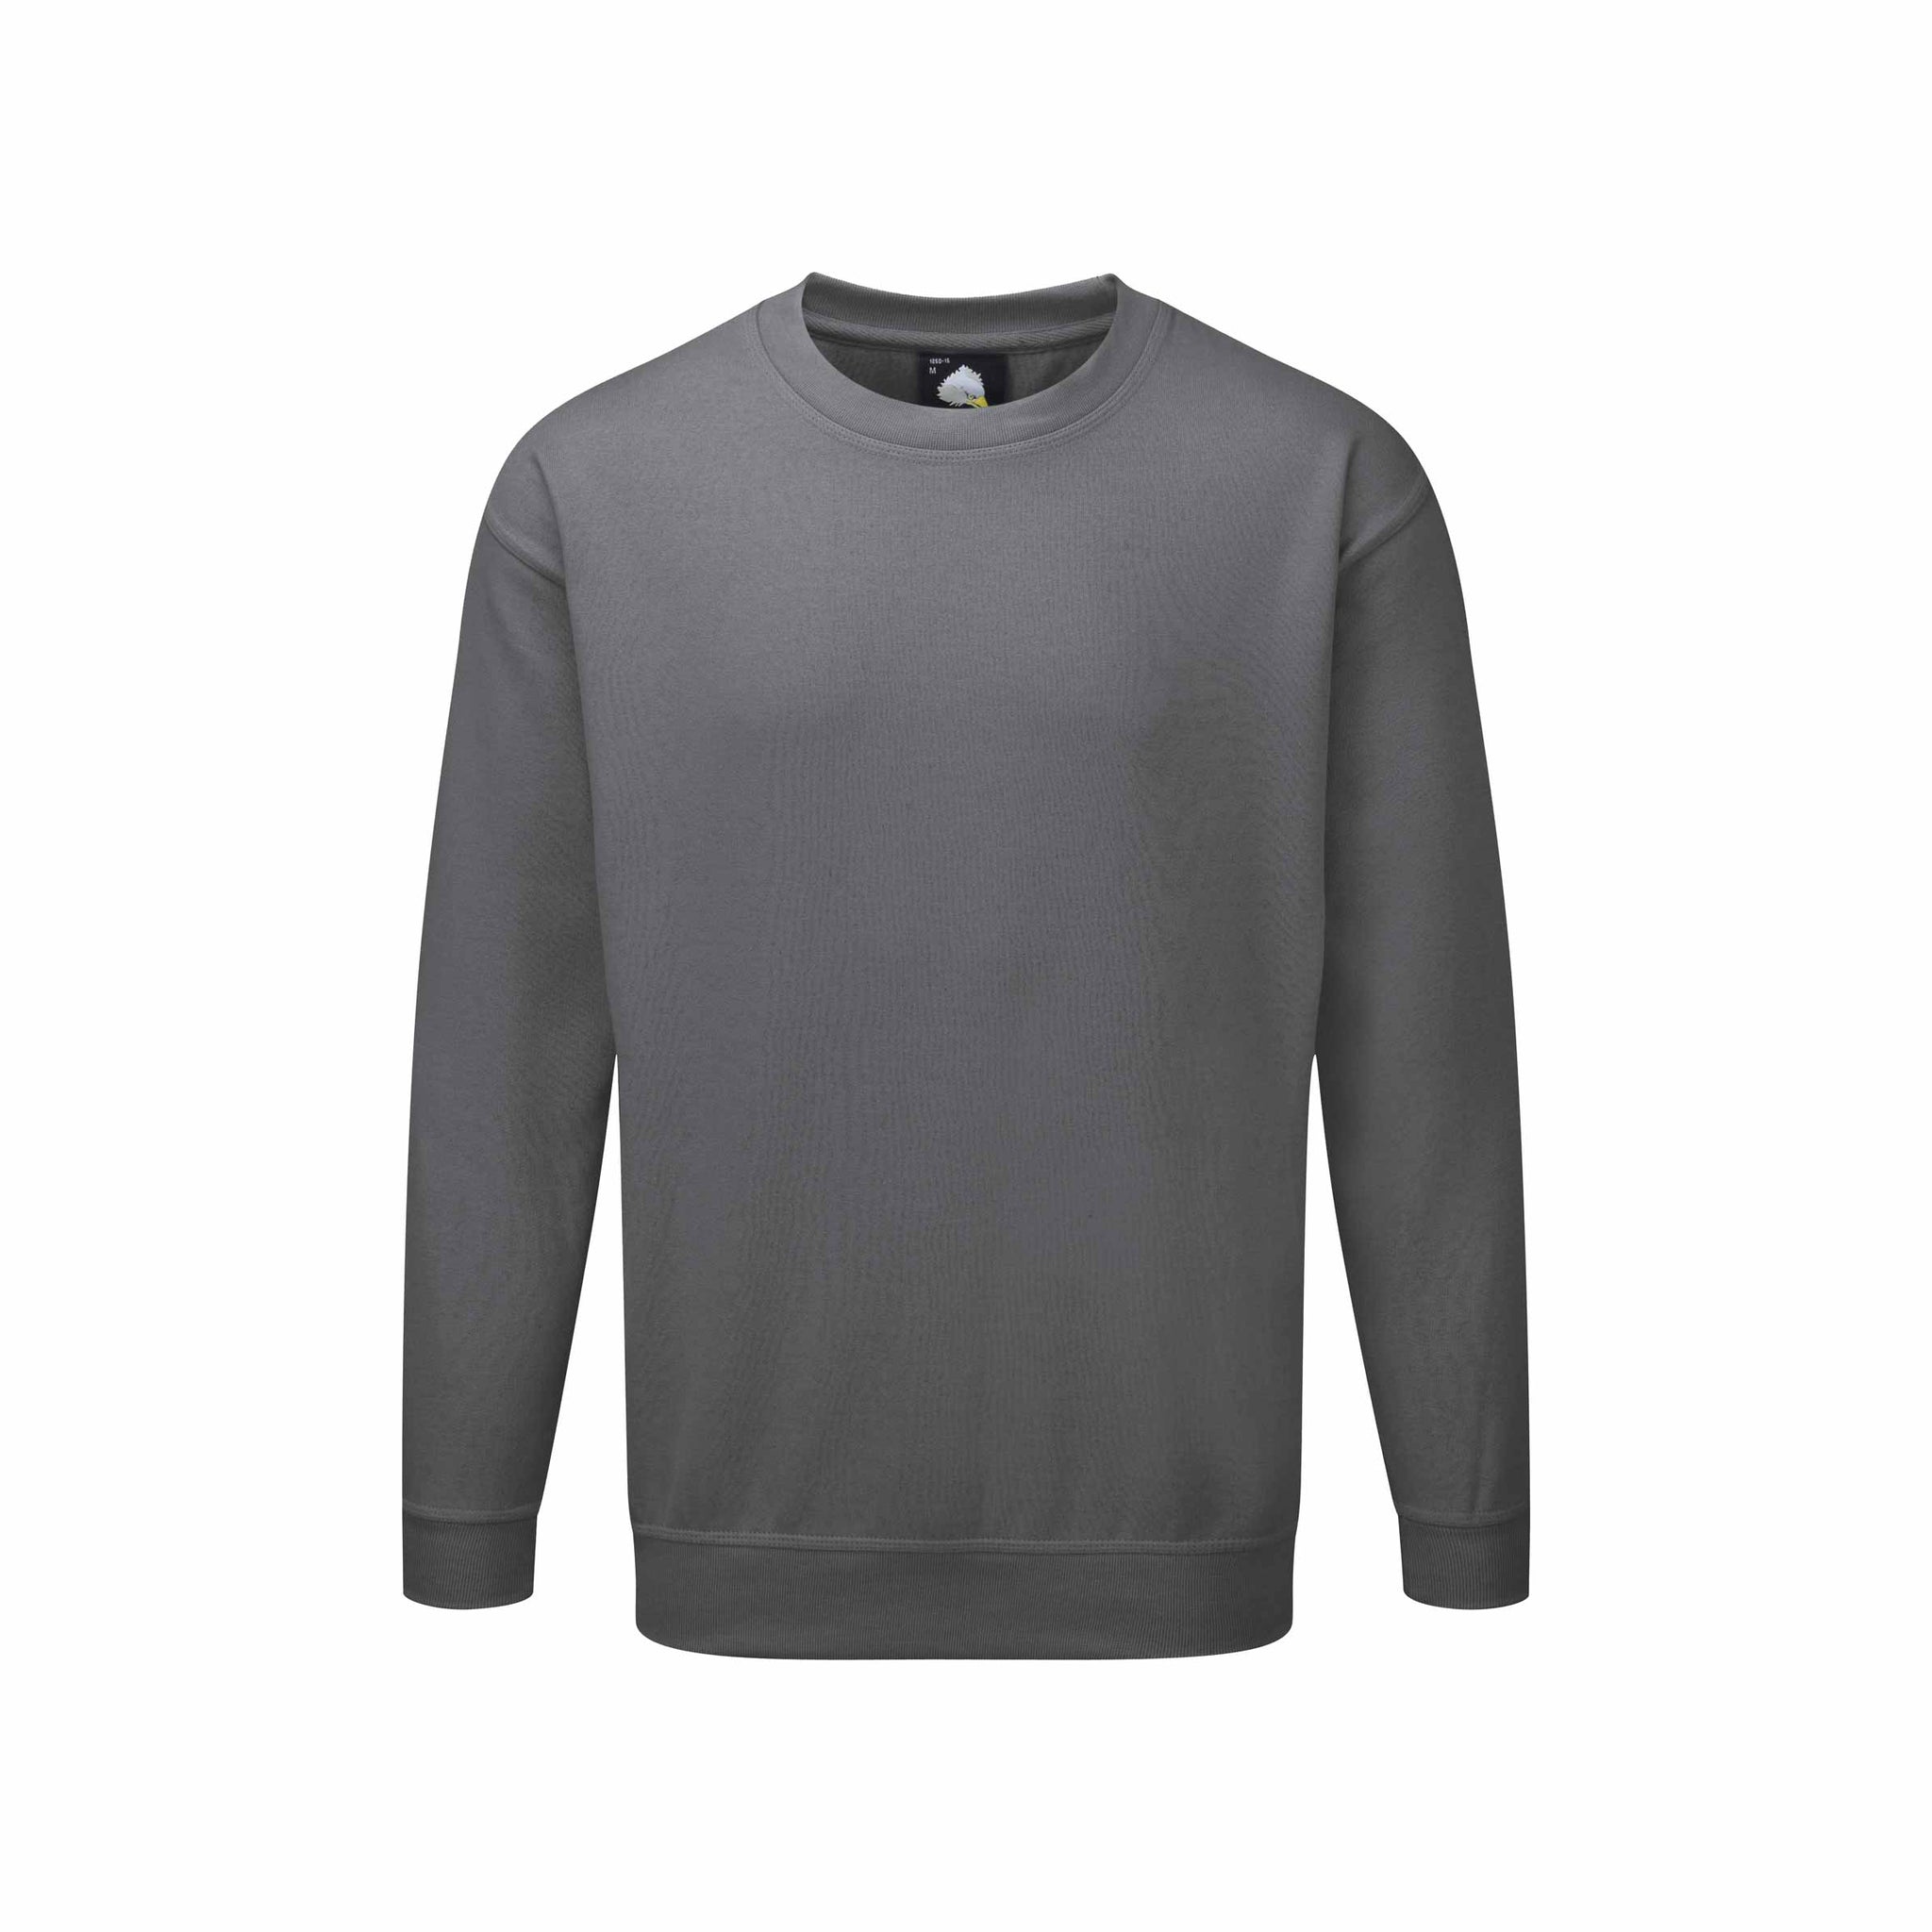 Premium Sweatshirt XS-5XL / 65% Polyester - 35% Baumwolle / 17 Farben / Kite